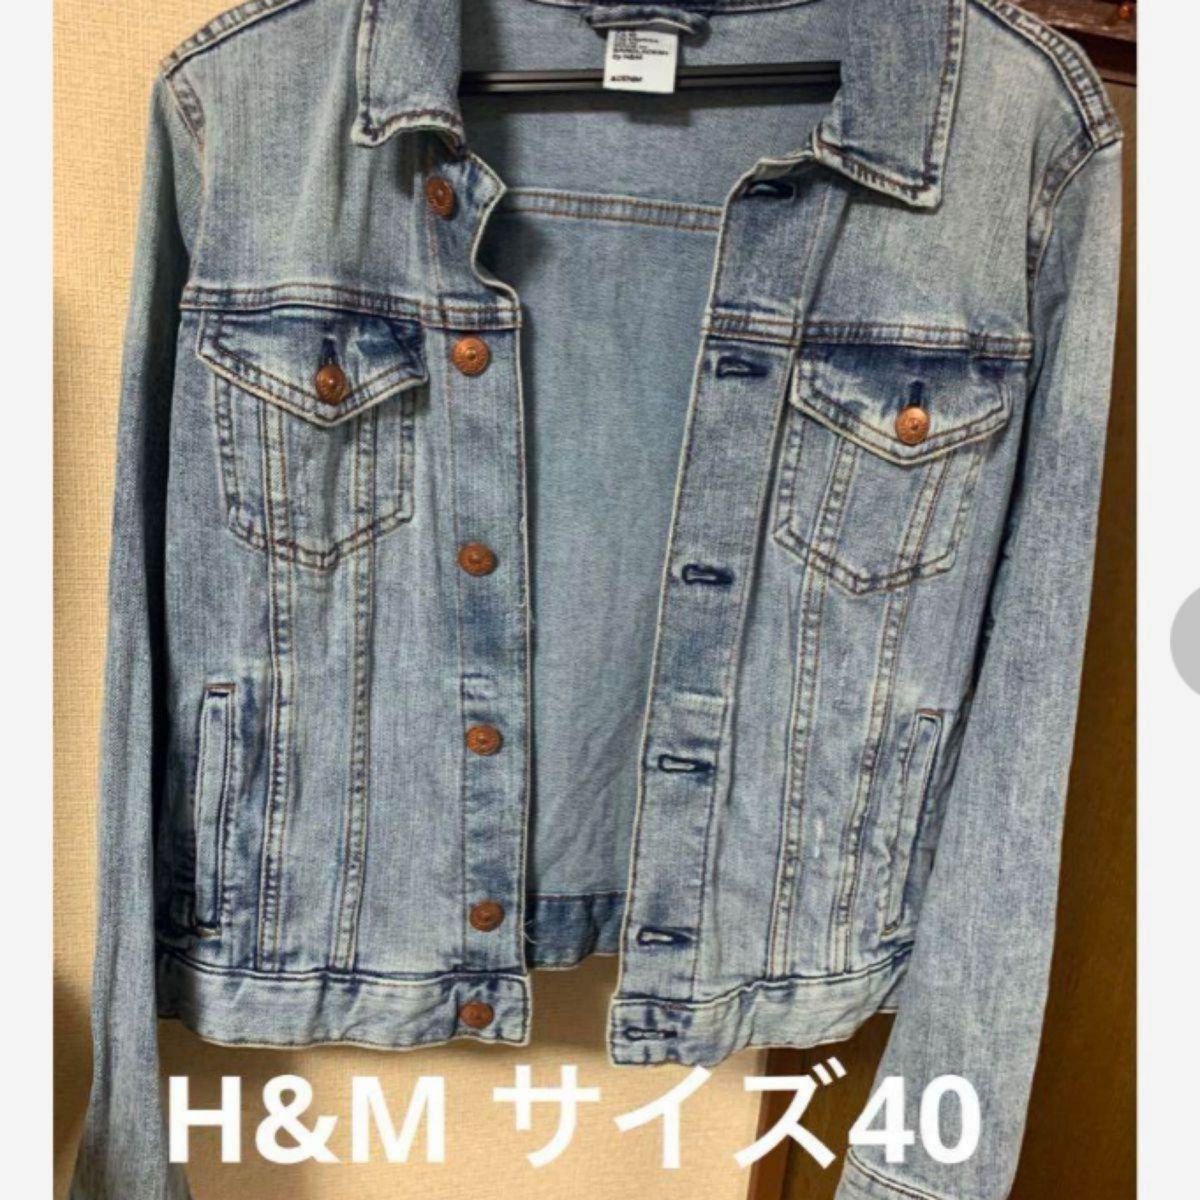 【H&M】【サイズ40】デニムジャケット Gジャン【エイチアンドエム】 デニムジャケット ダメージ加工